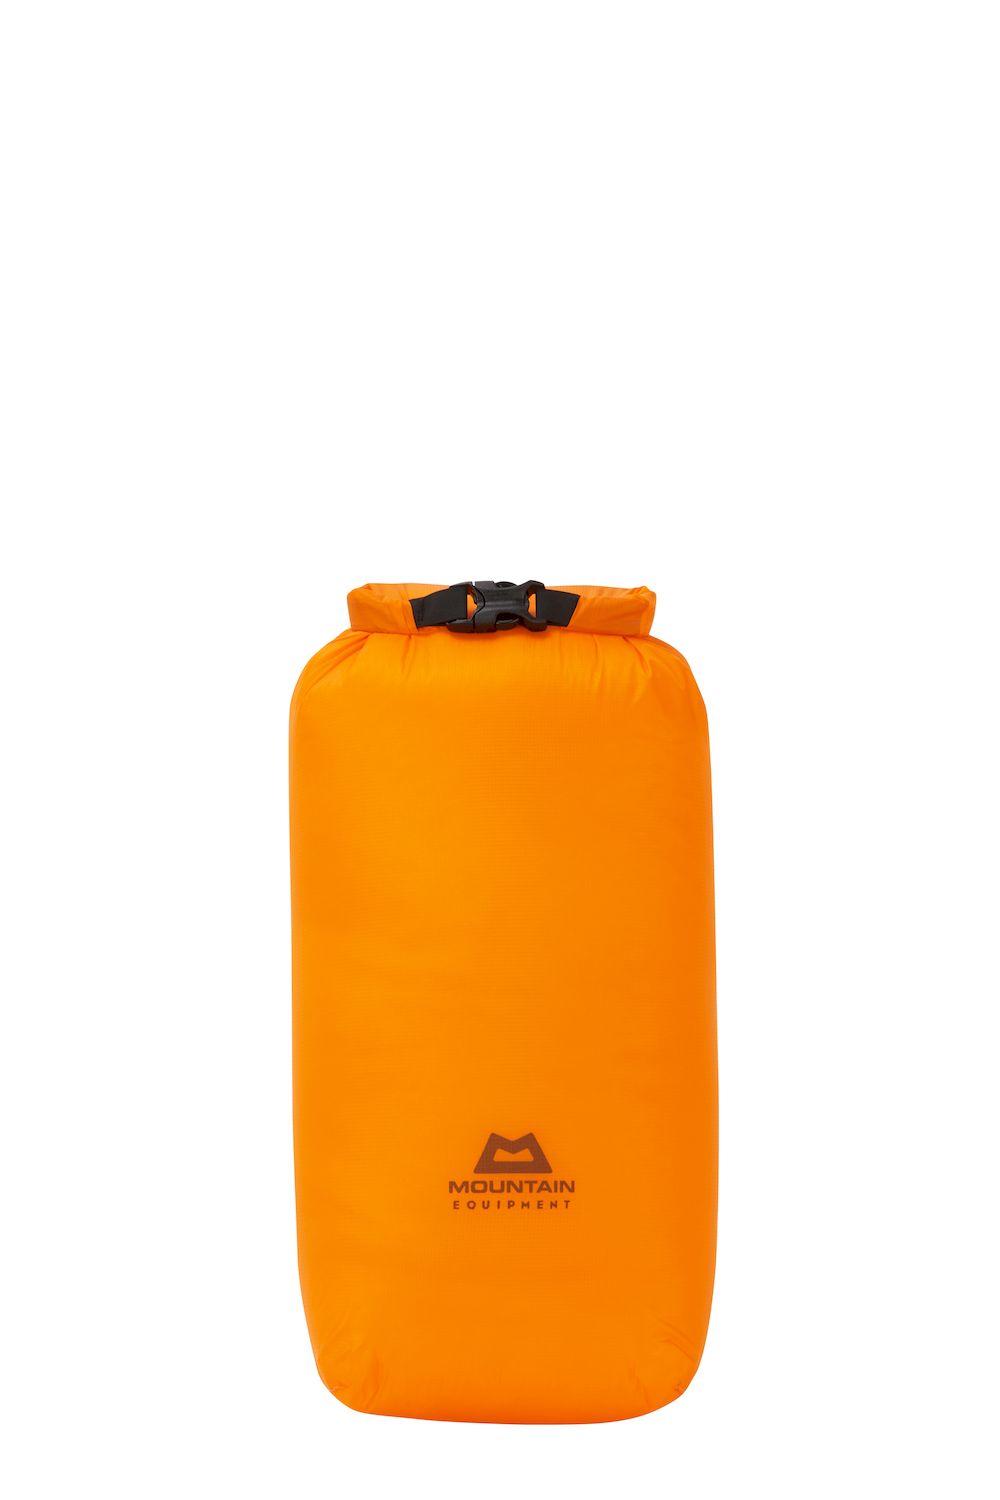 Mountain Equipment Lightweight Drybag 5L - Sac étanche